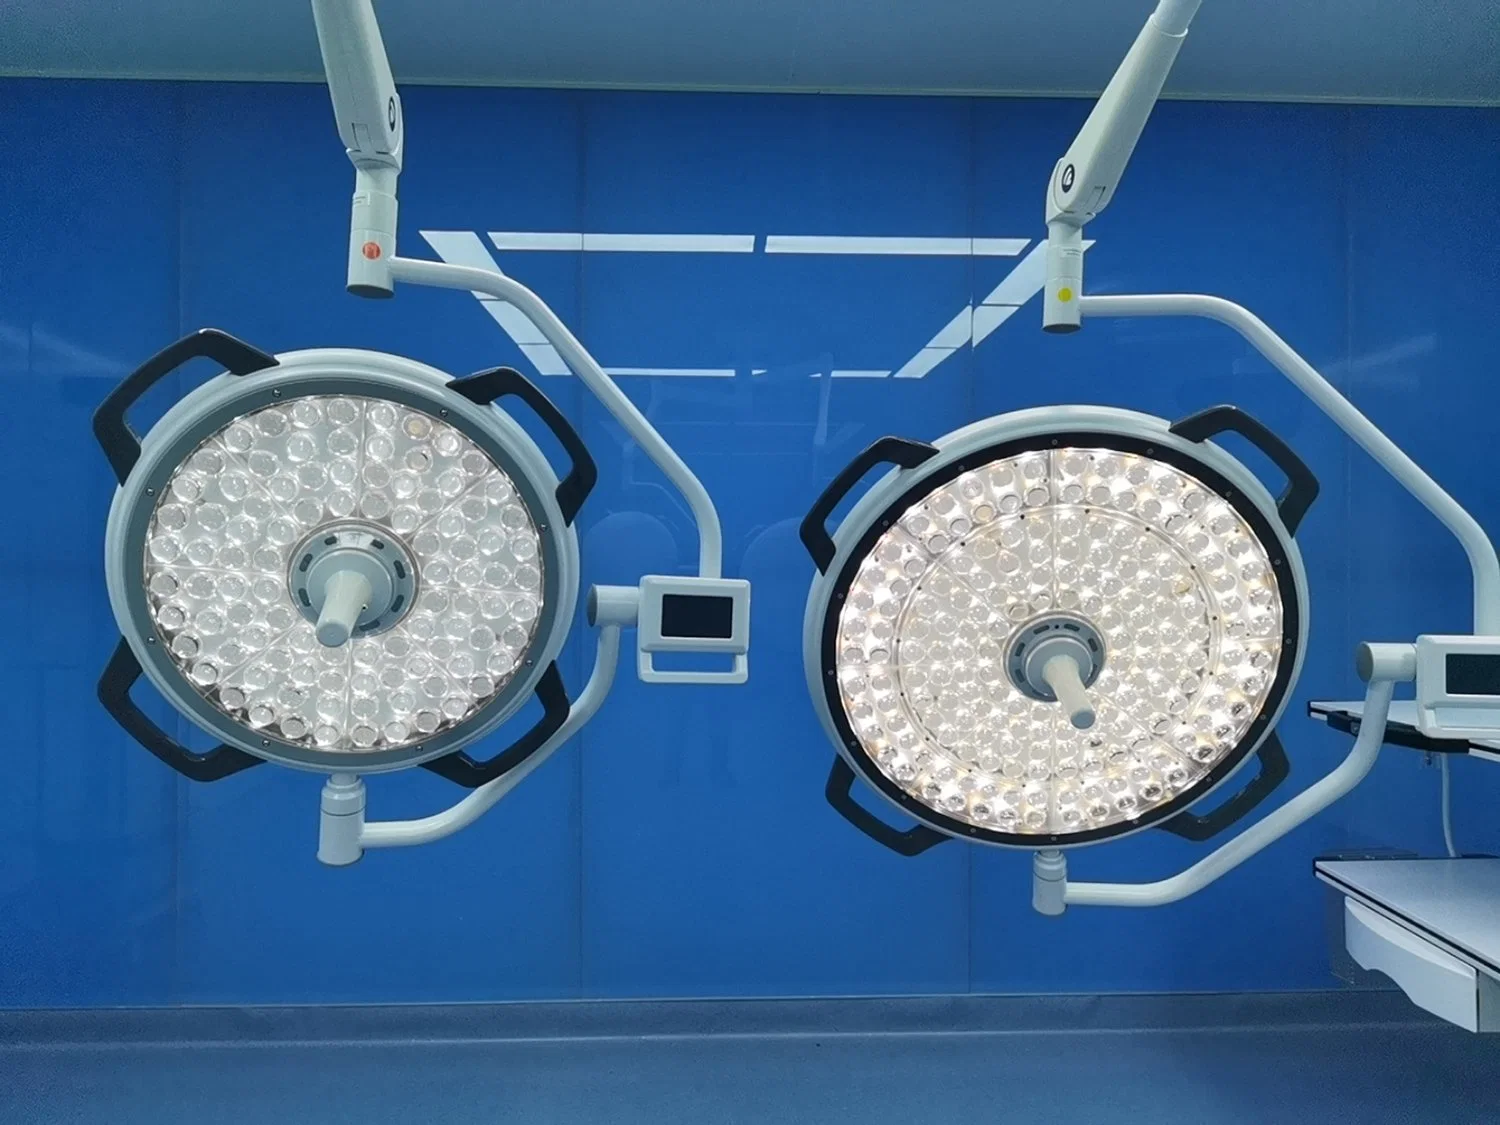 Mt медицинская операция лампа LED Shadowless медицинских стоматологических хирургические лампы потолочного фонаря рабочего освещения